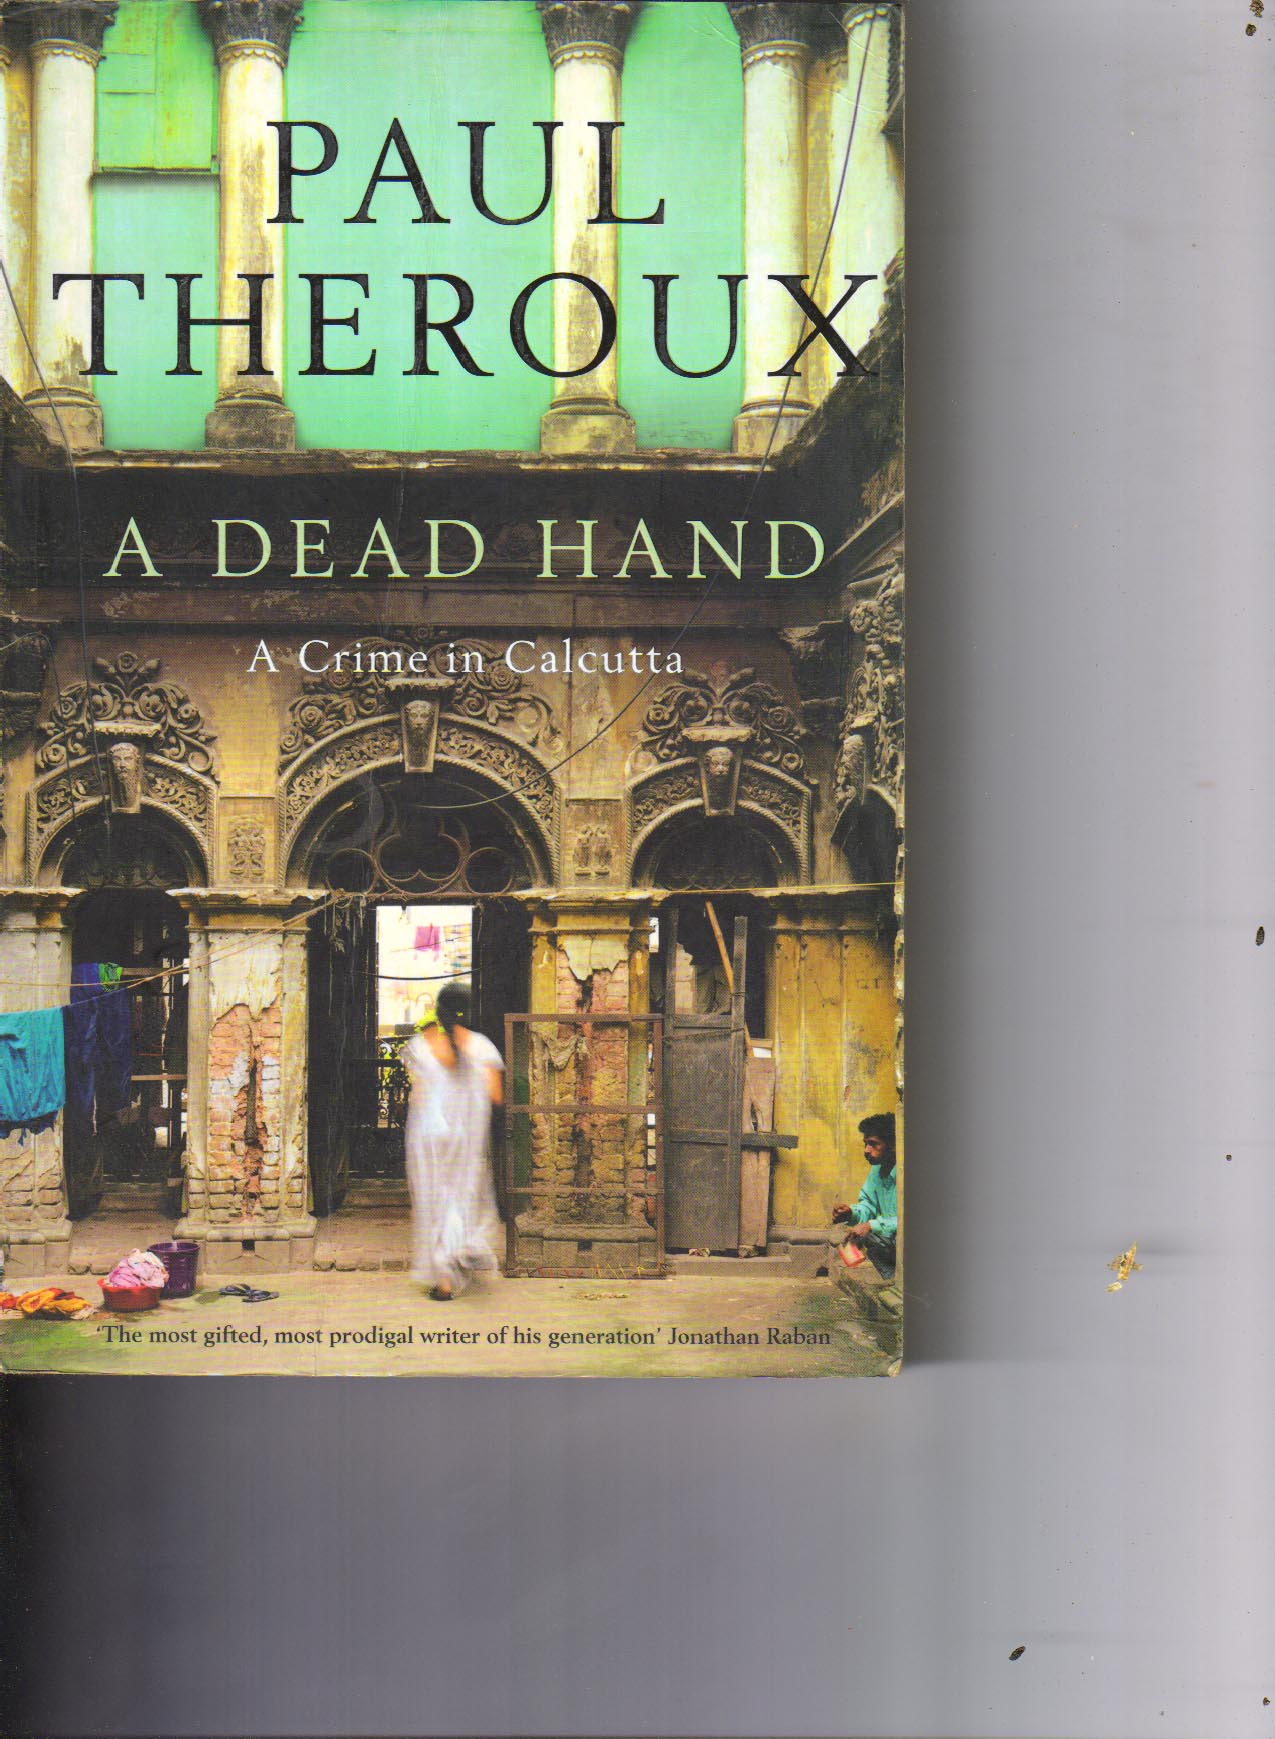 A Dead Hand A Crime in Calcutta